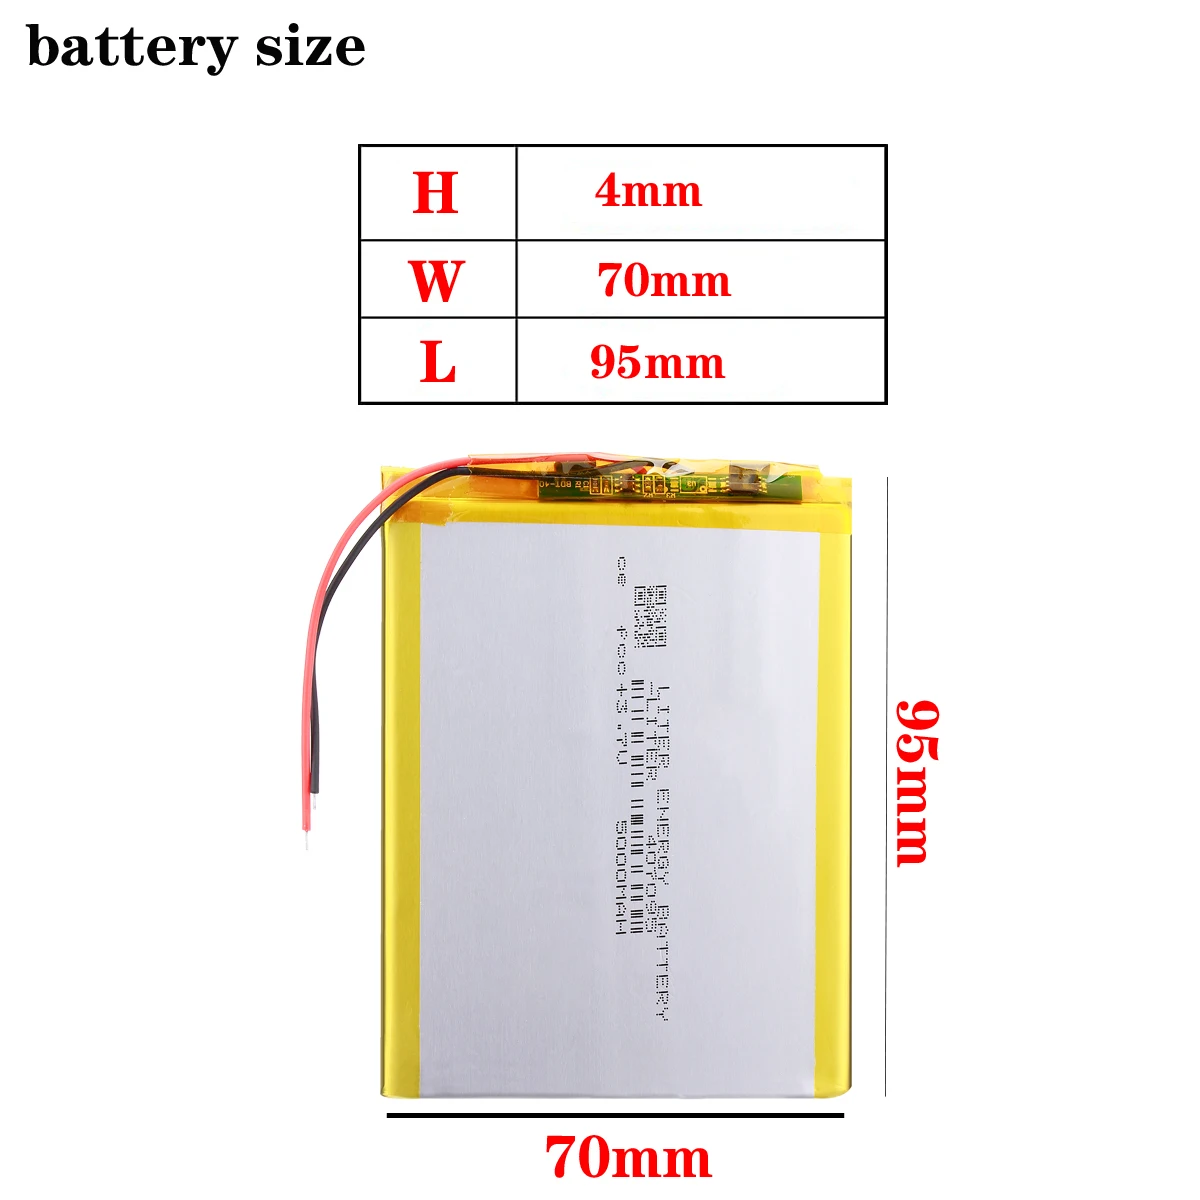 bateria de polímero de lítio com placa de proteção para pc